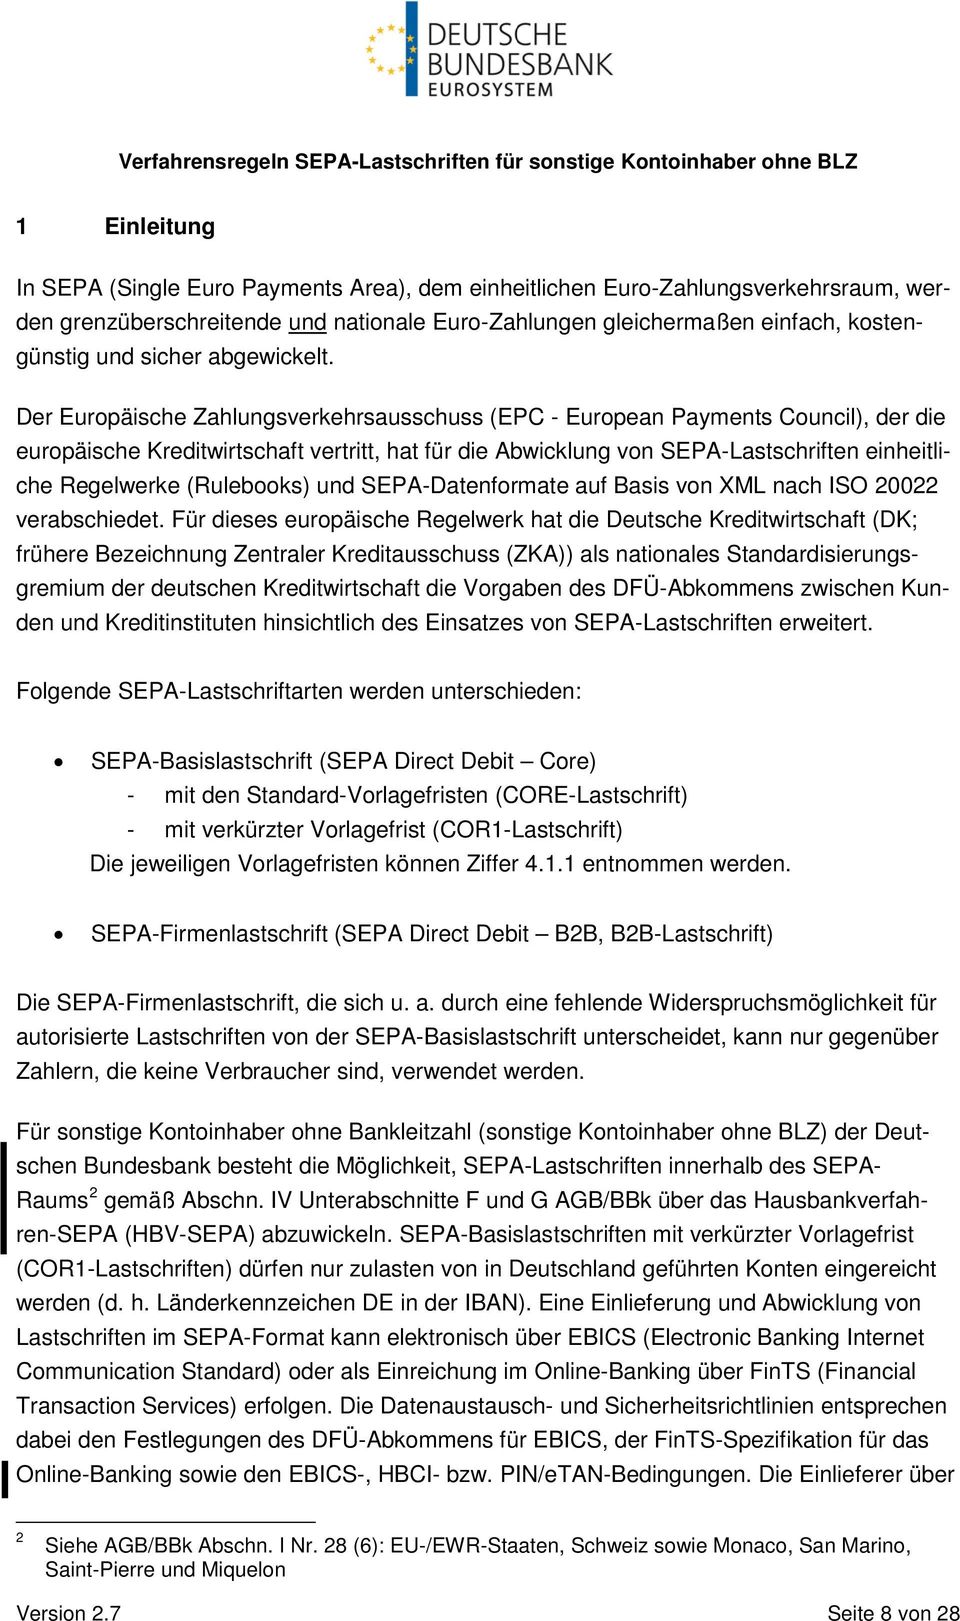 Der Europäische Zahlungsverkehrsausschuss (EPC - European Payments Council), der die europäische Kreditwirtschaft vertritt, hat für die Abwicklung von SEPA-Lastschriften einheitliche Regelwerke